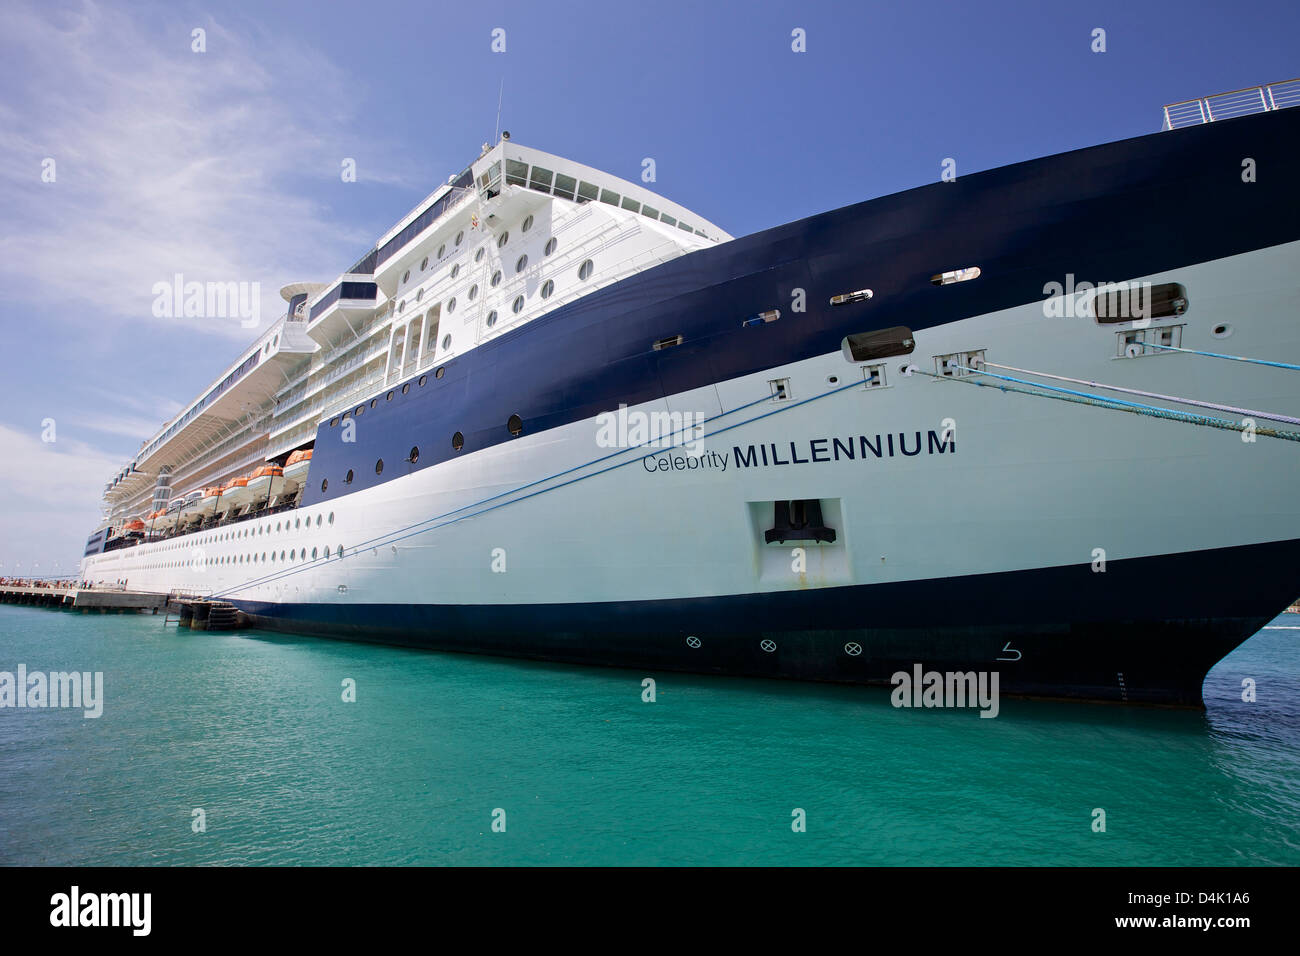 The cruise ship Celebrity Millennium docked at Key West, Florida Stock Photo